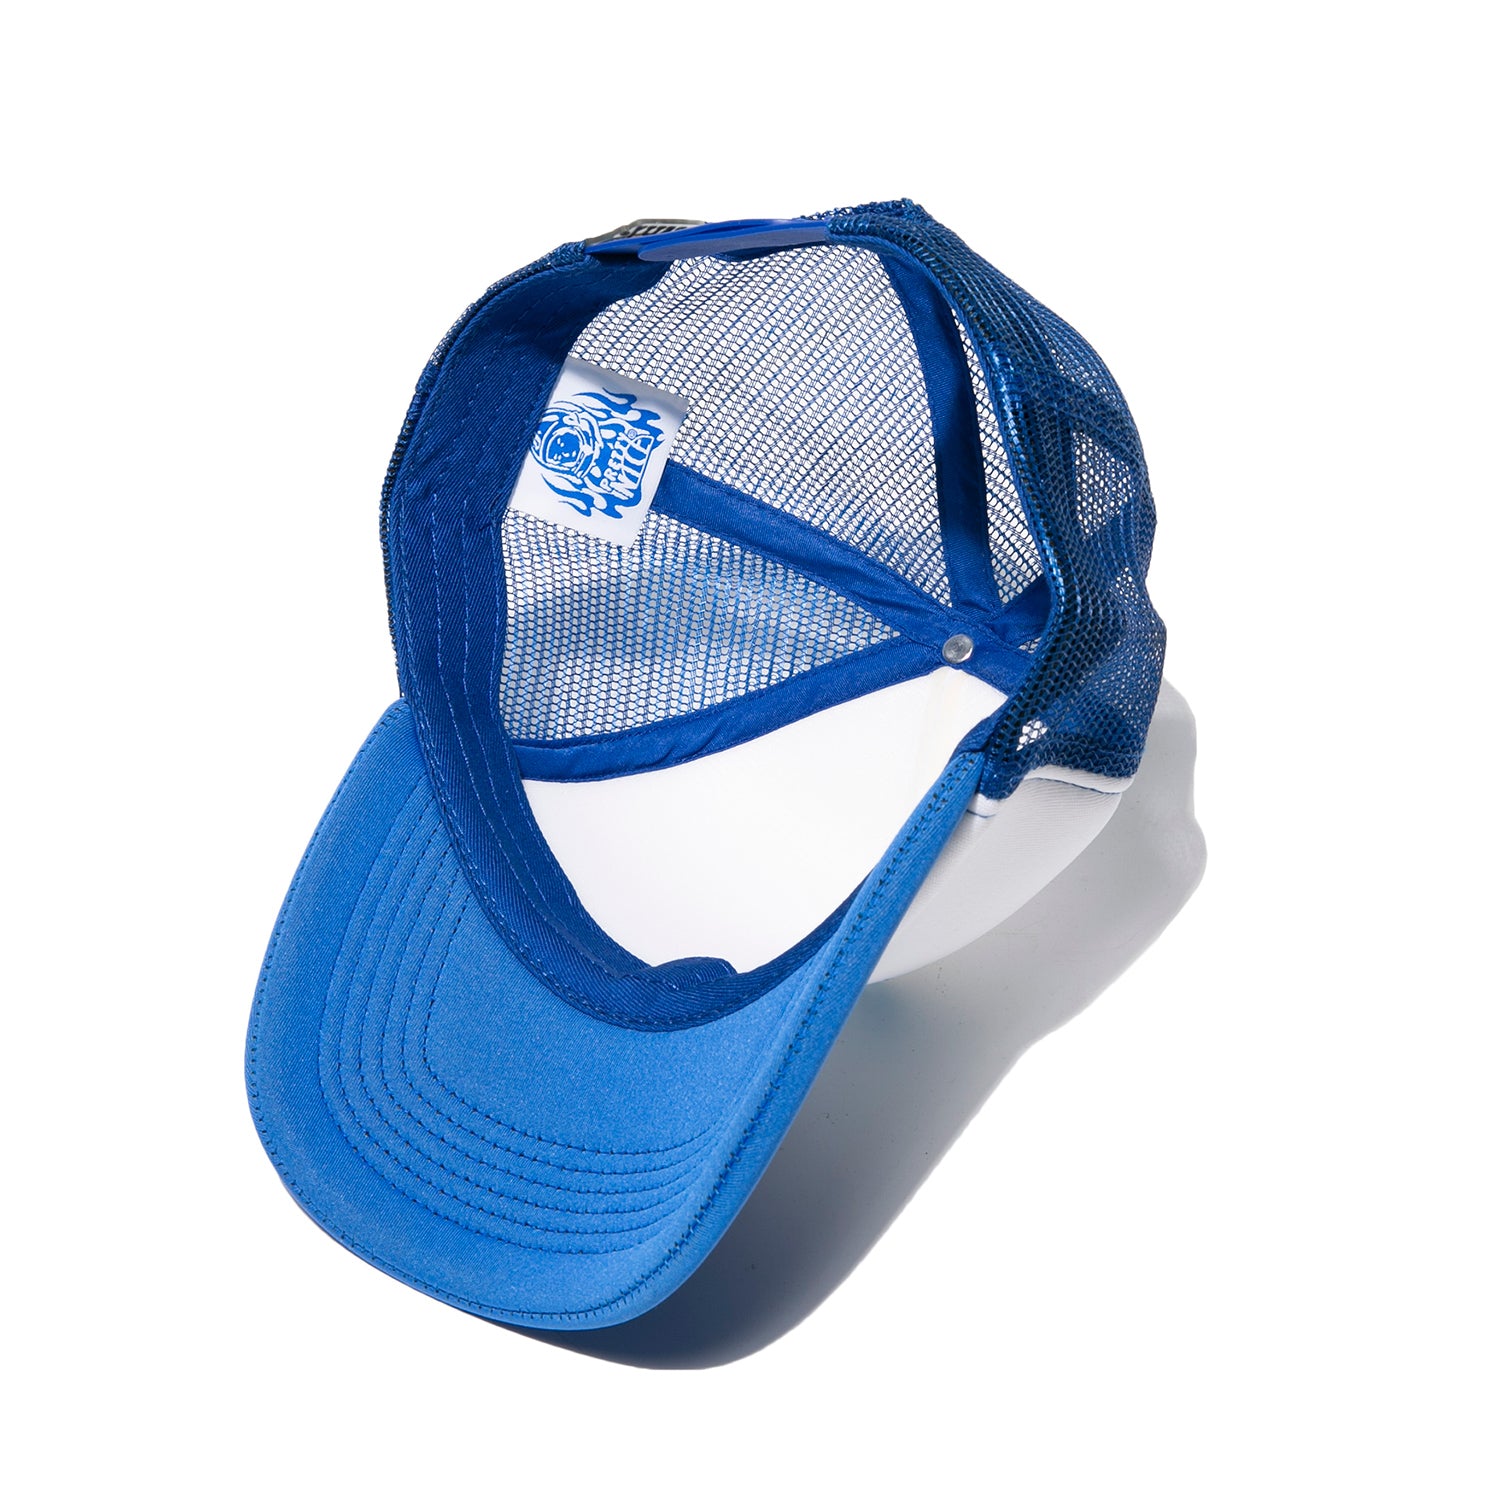 Helmet Trucker Cap-Blue